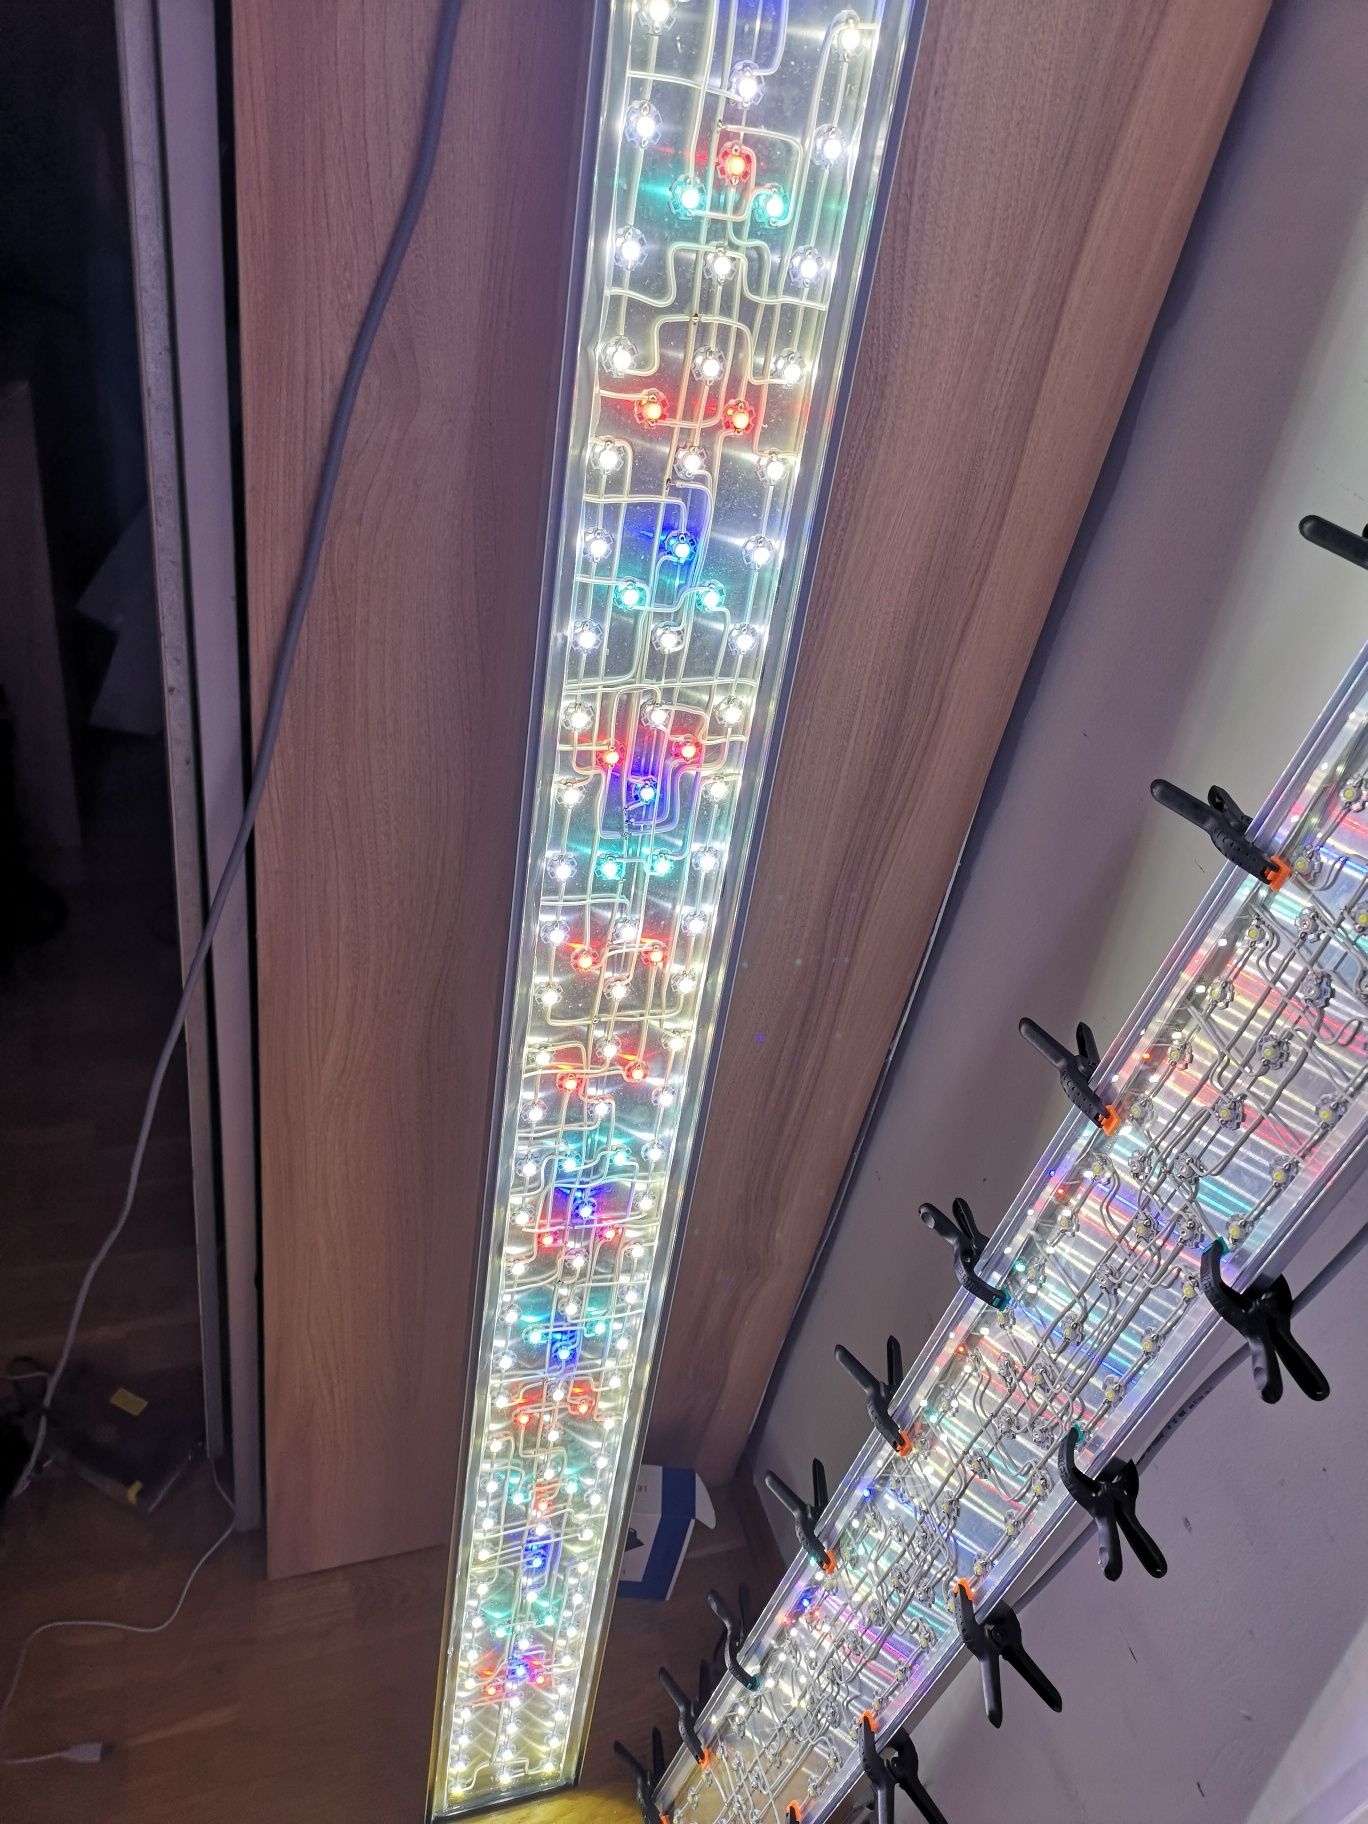 Lampa Power LED 2 metry sterowanie TC420. 5 kanały